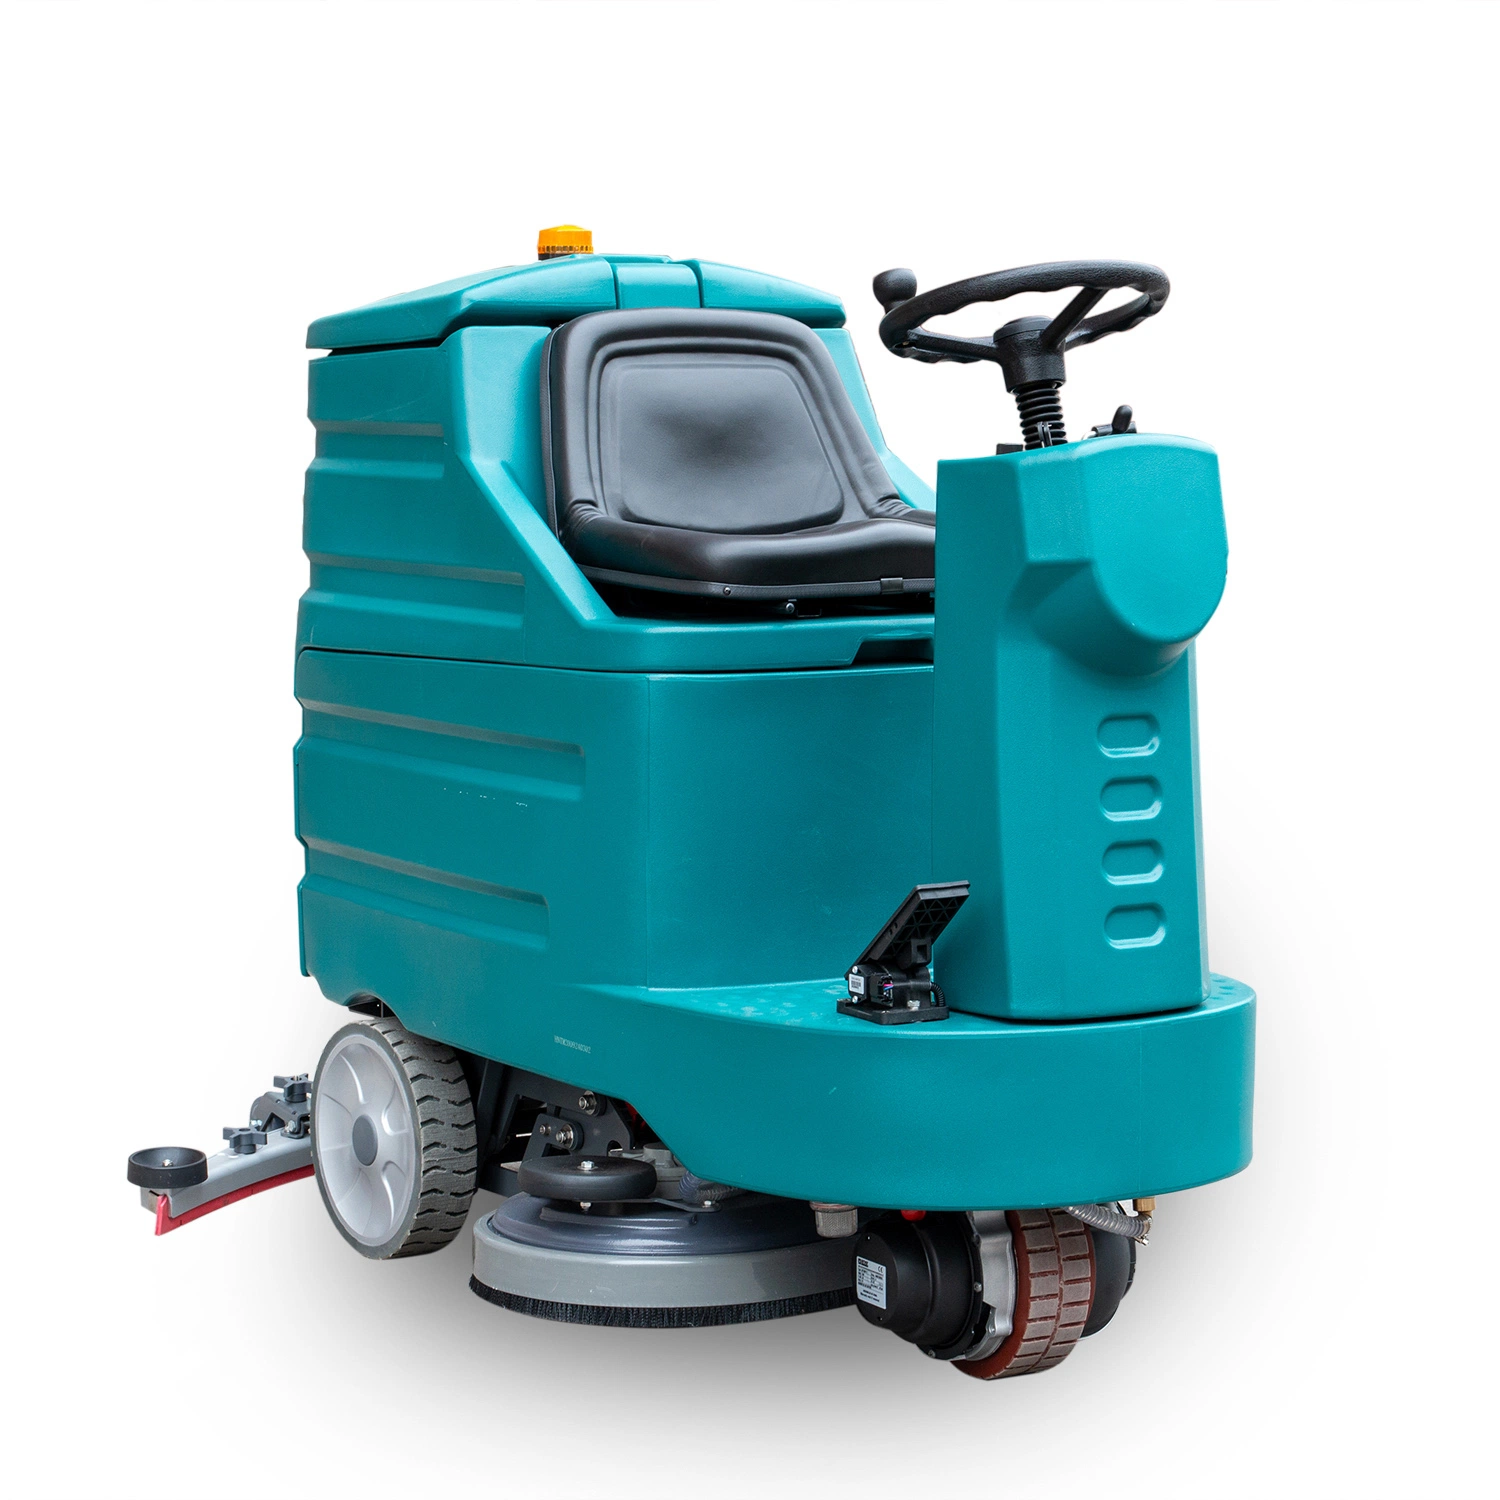 Machine de nettoyage automatique électrique sur batterie pour sols industriels/commerciaux, idéale pour le lavage des routes, des rues, des parkings, des hôpitaux et des entrepôts.